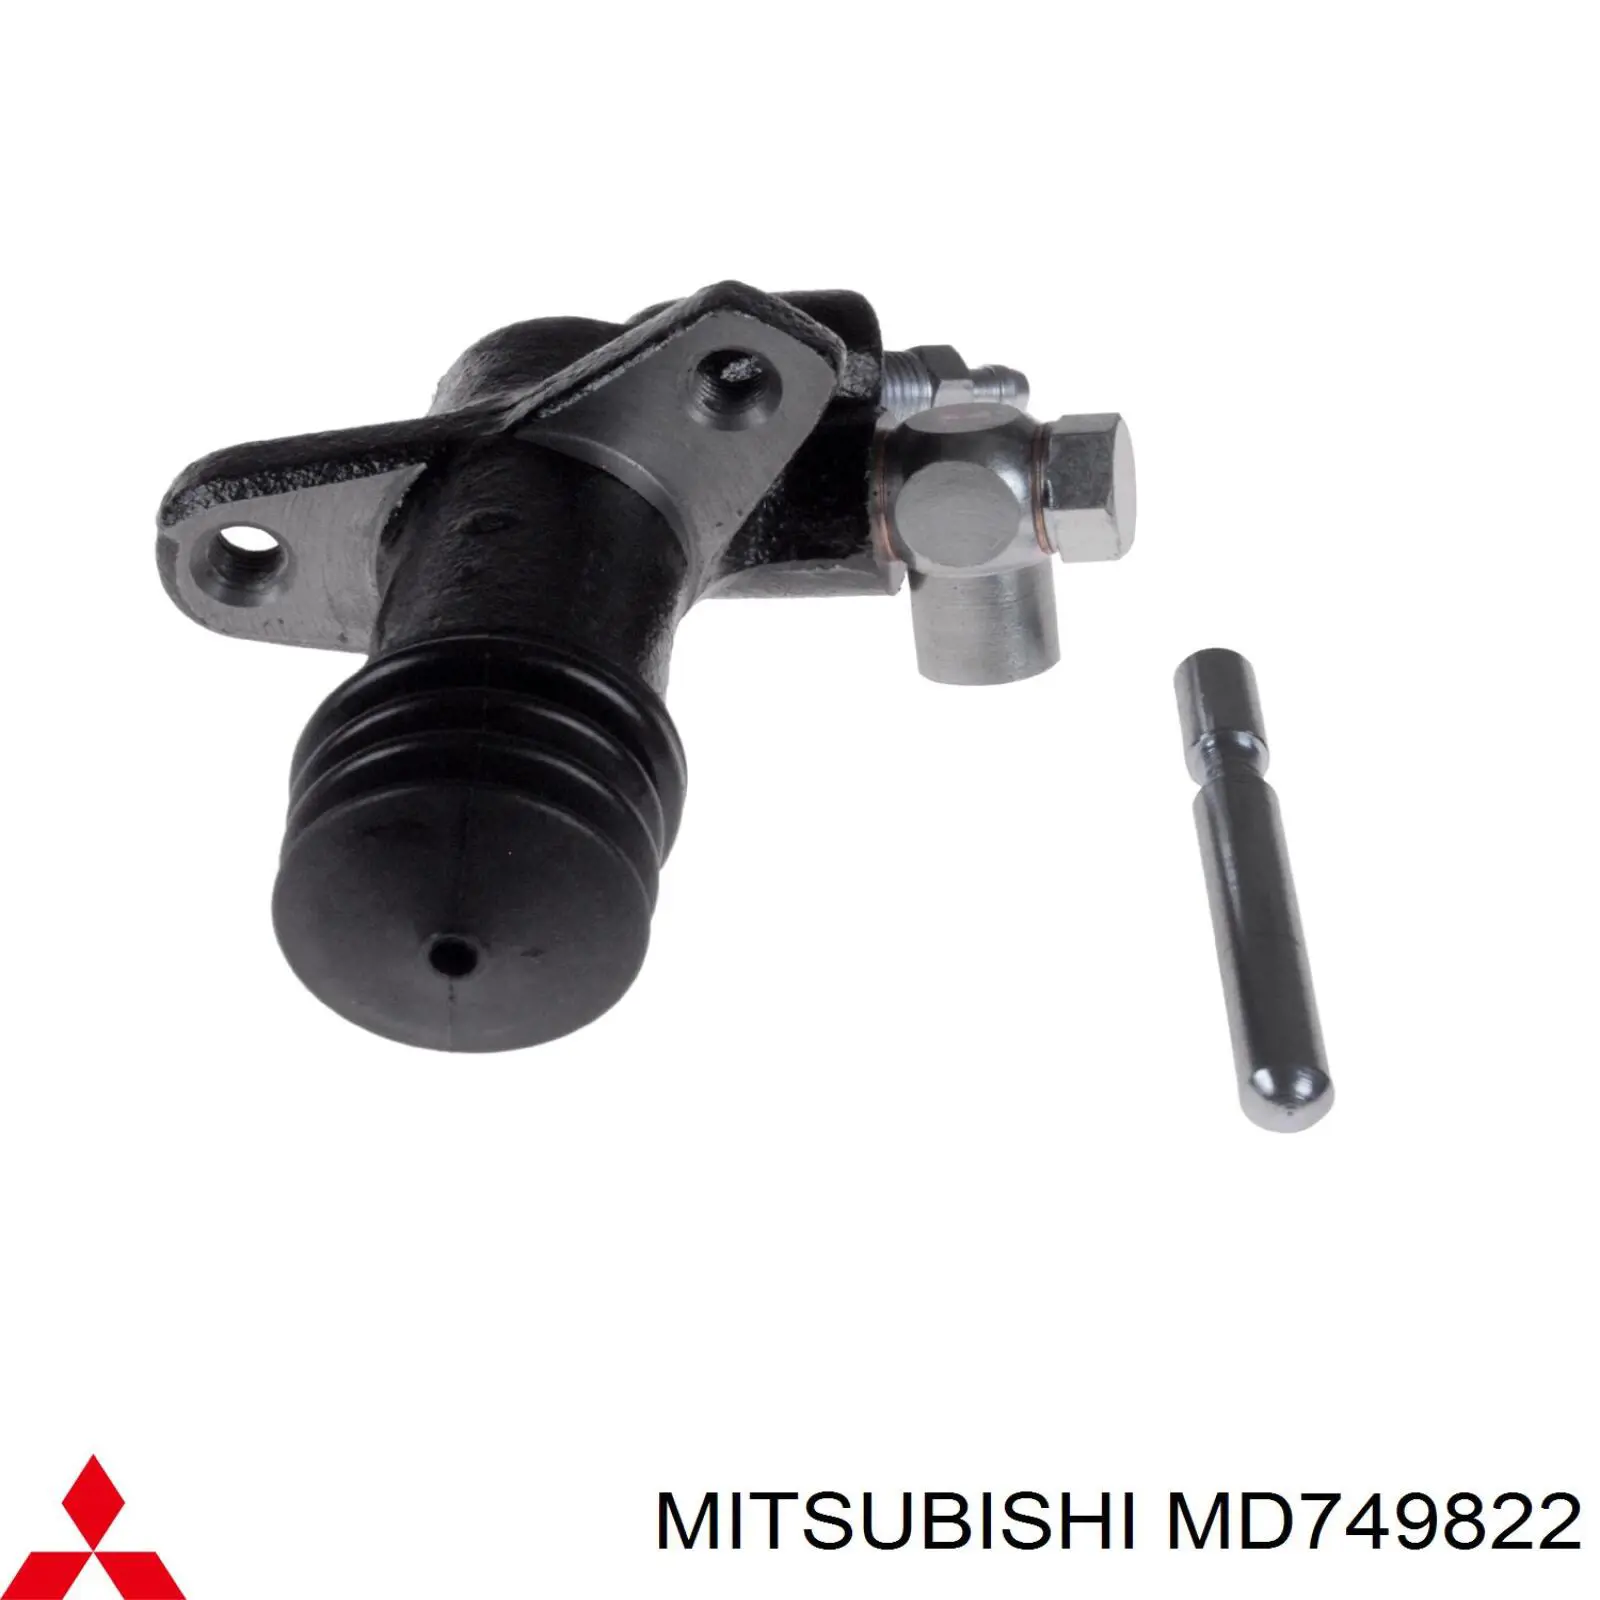 MD749822 Mitsubishi цилиндр сцепления рабочий